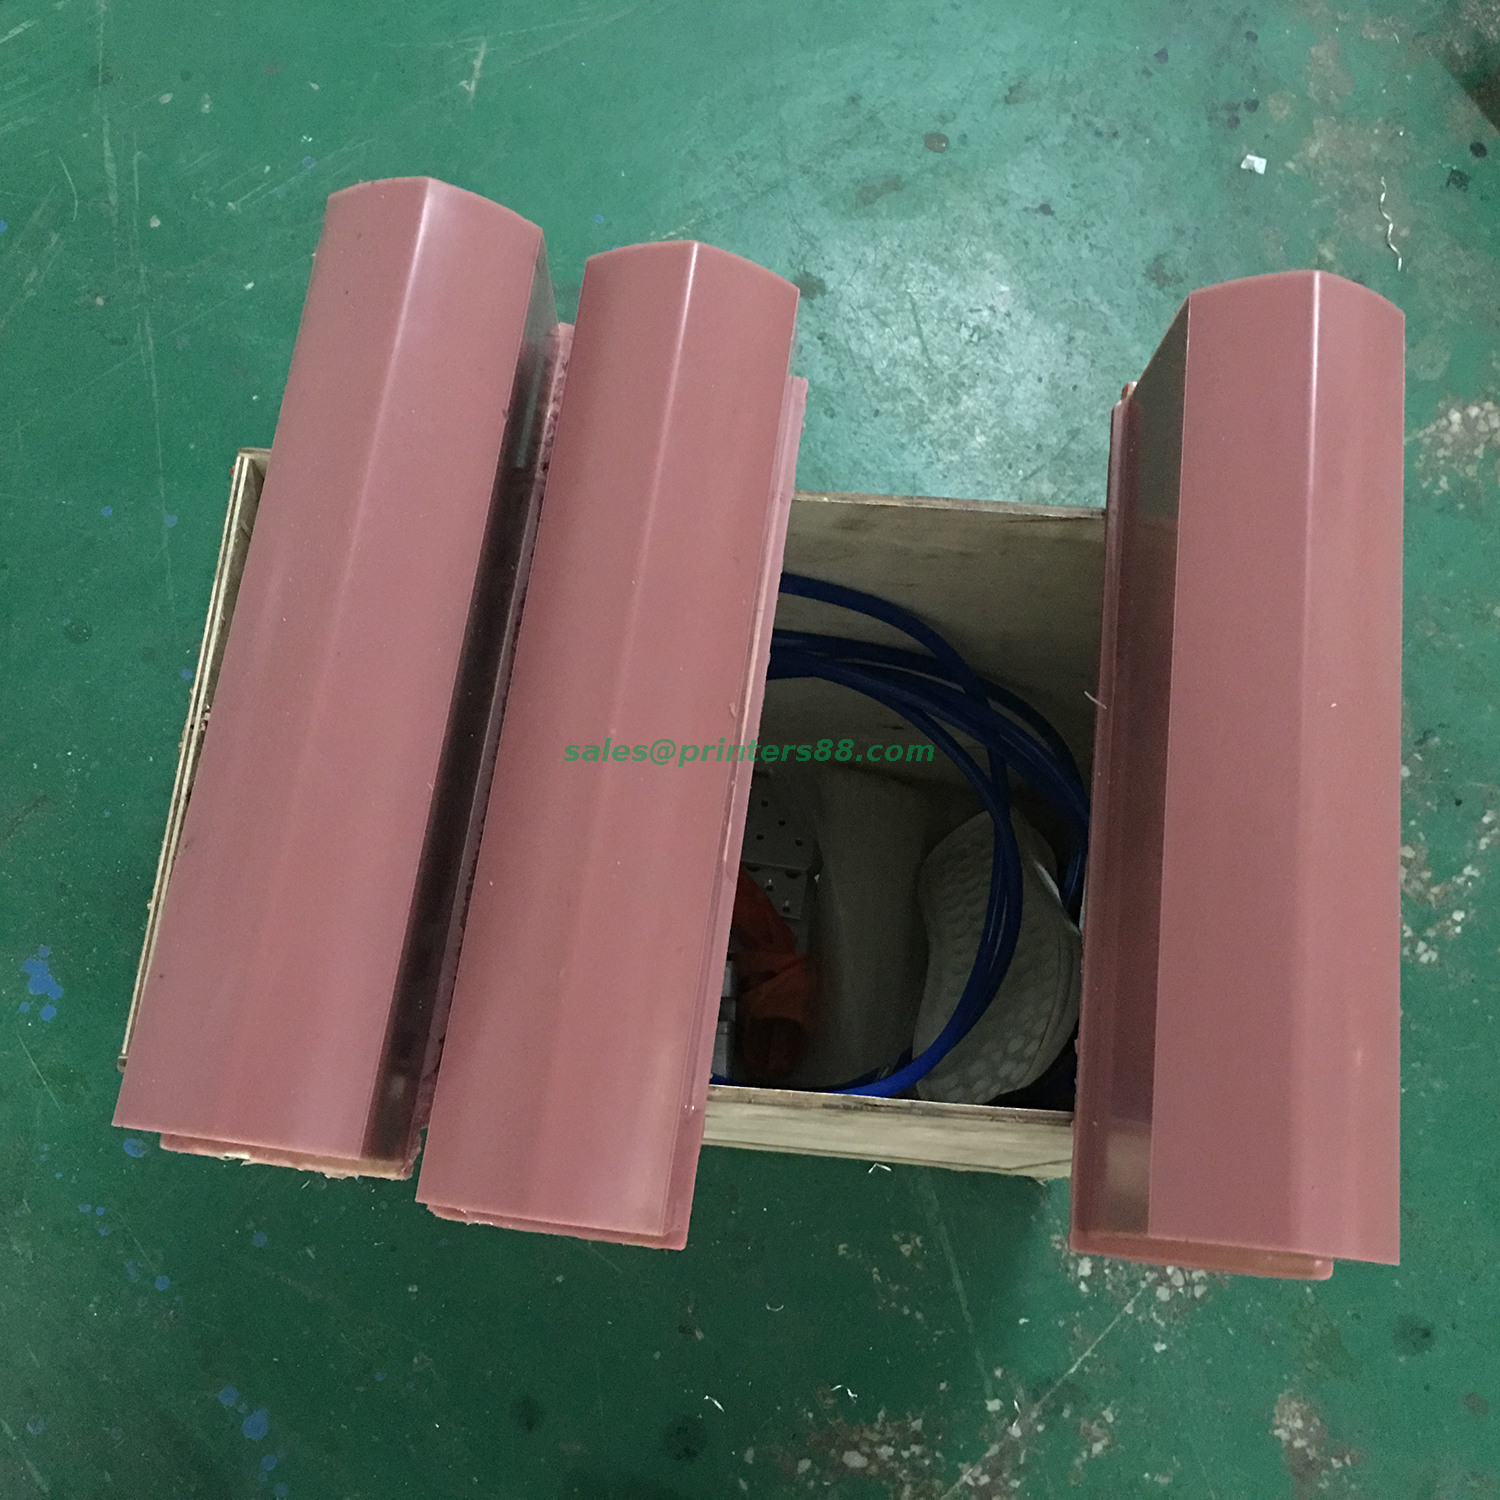 Four Color Pad Printer for Shoe Sole (M4-XT)